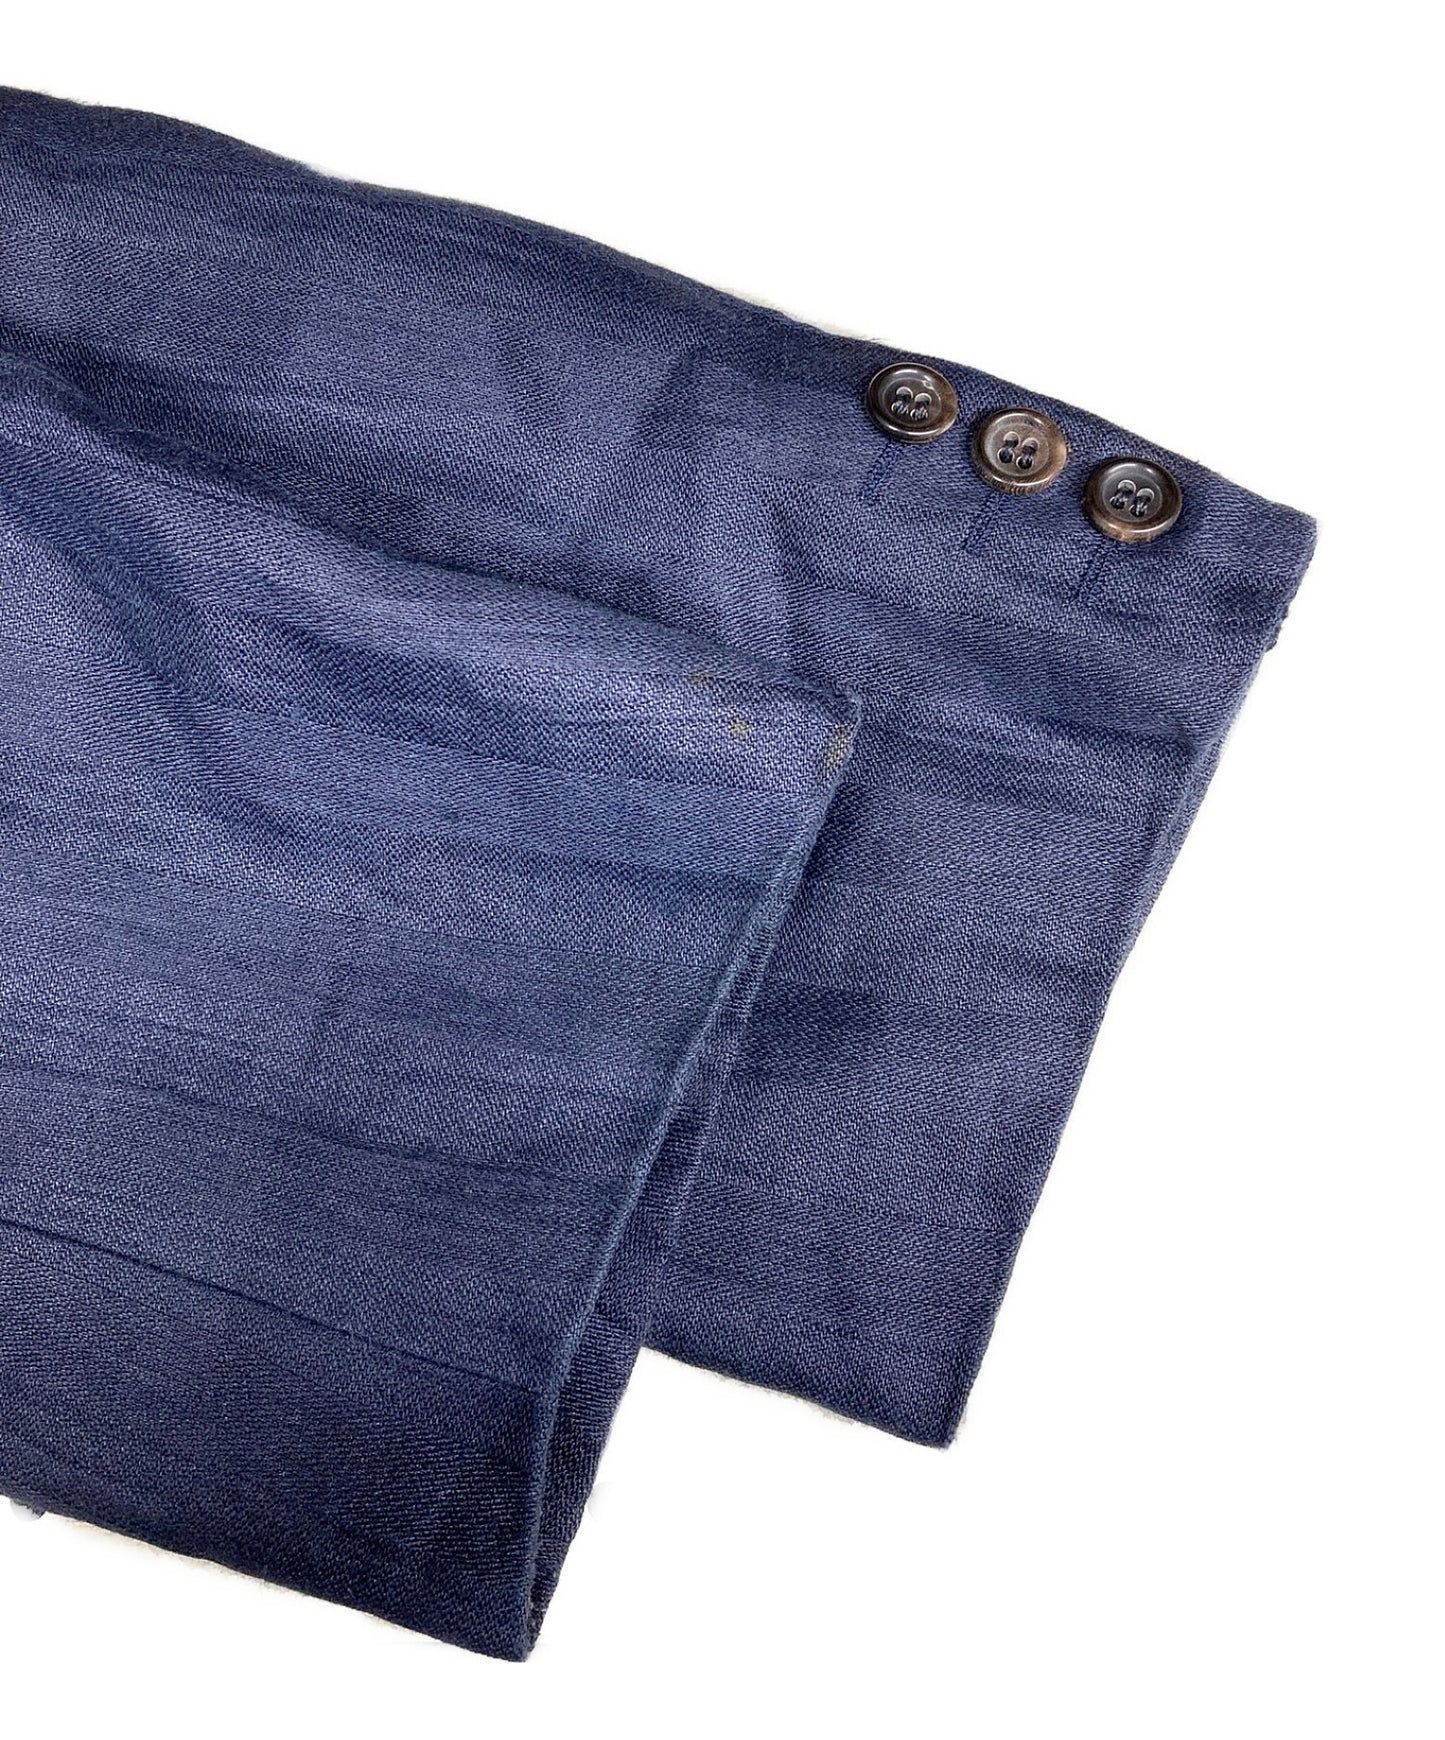 [Pre-owned] COMME des GARCONS HOMME Vintage Linen Jacket/Tailored Jacket HJ-02010S